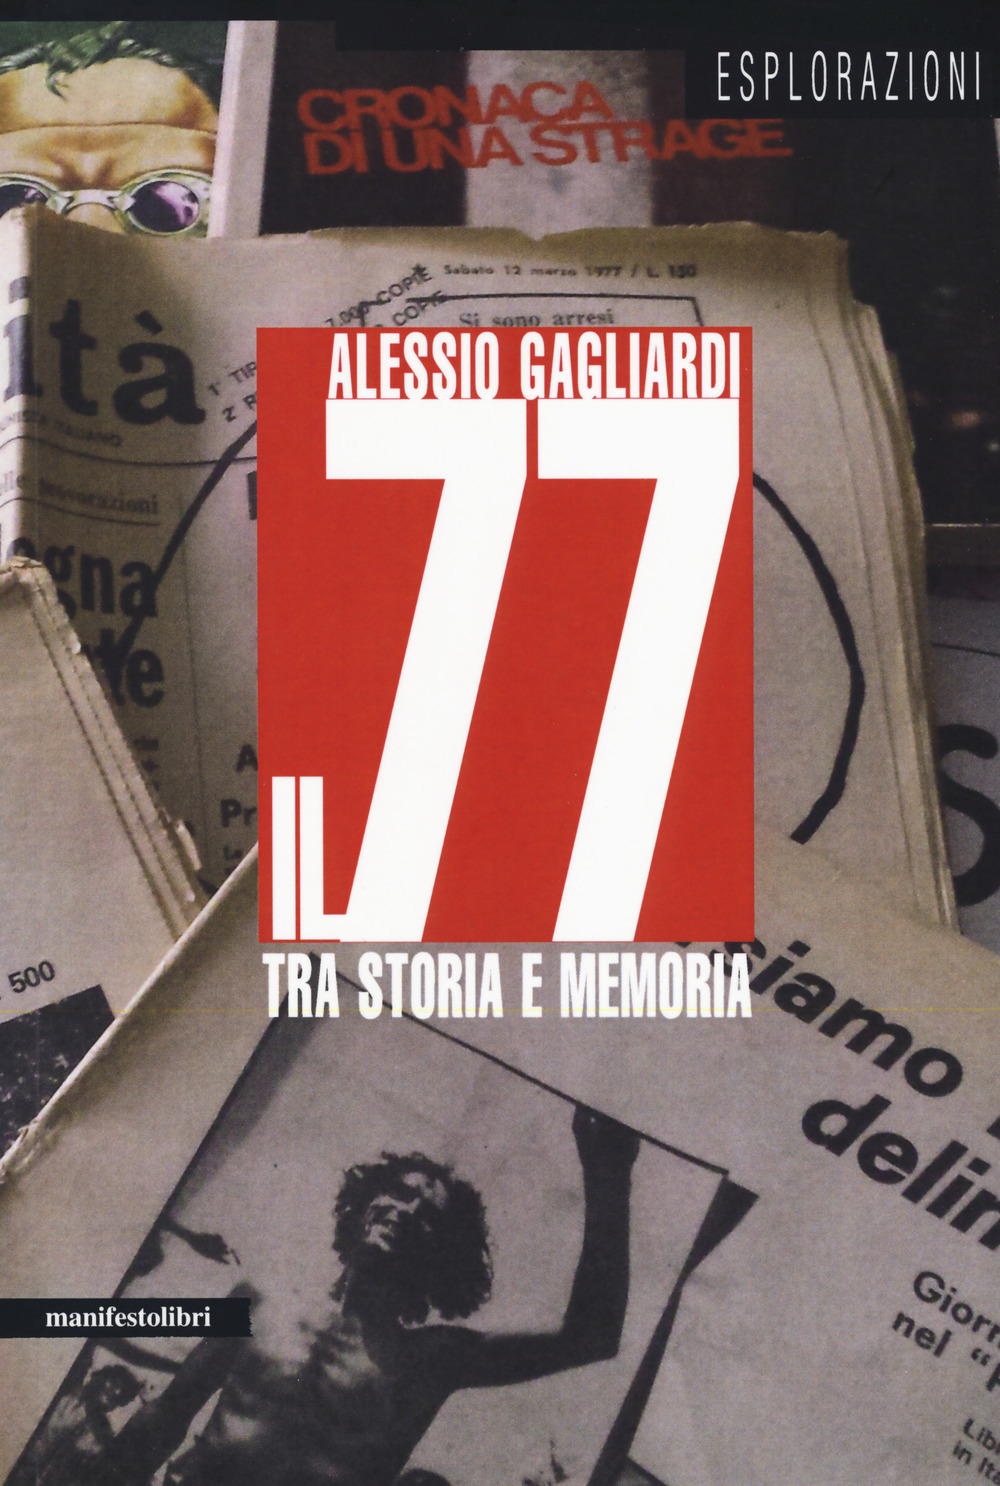 Alessio GAGLIARDI, <em/>Il 77 tra storia e memoria, Roma, manifestolibri, 2017